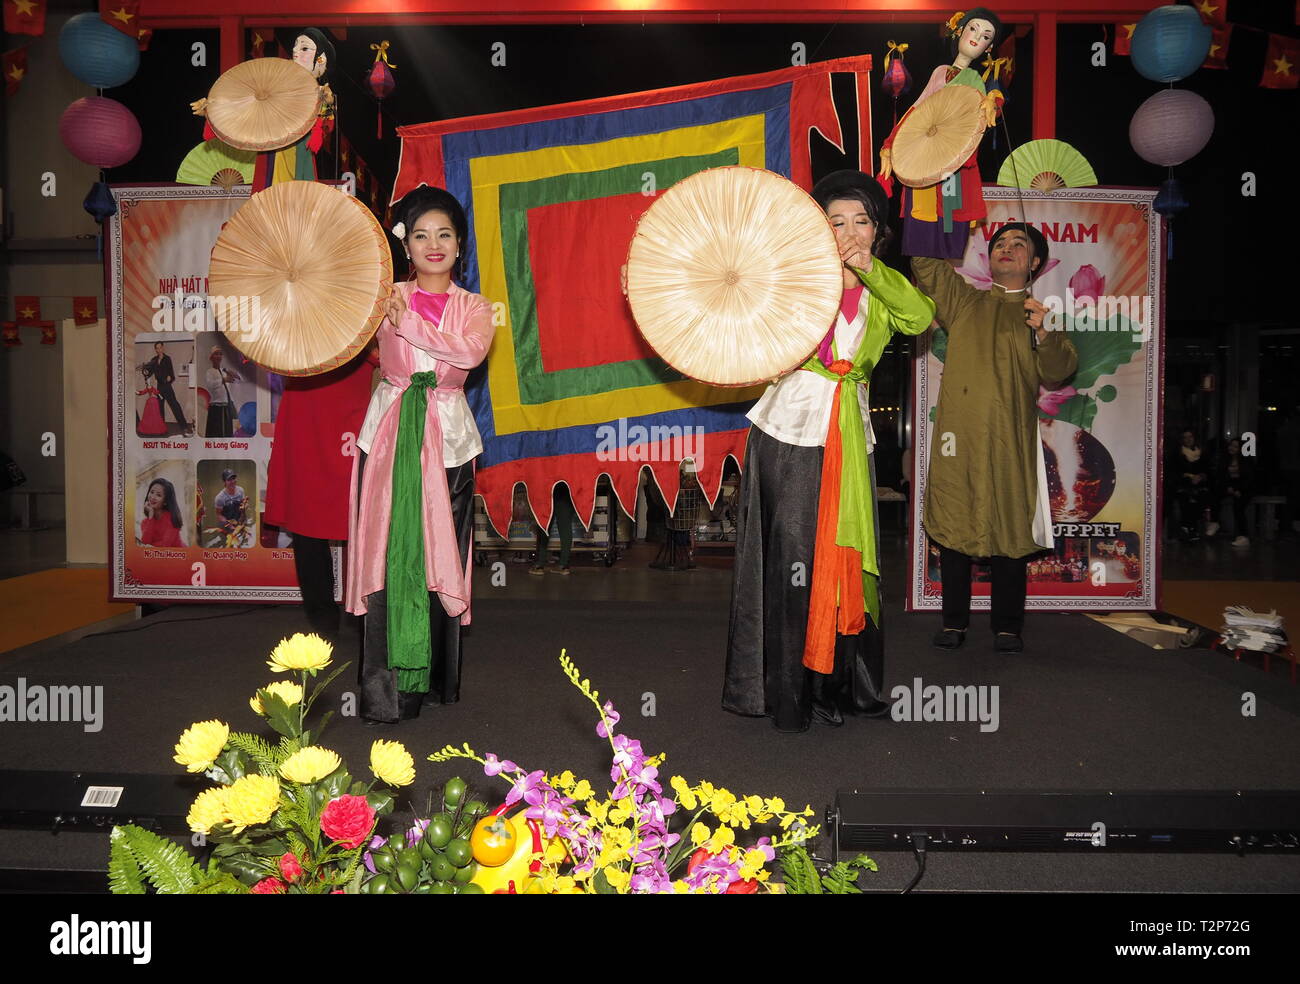 Rho, Italia 1 Dicembre 2018: un gruppo di folklore dal Vietnam esegue durante la fiera di artigiani Foto Stock